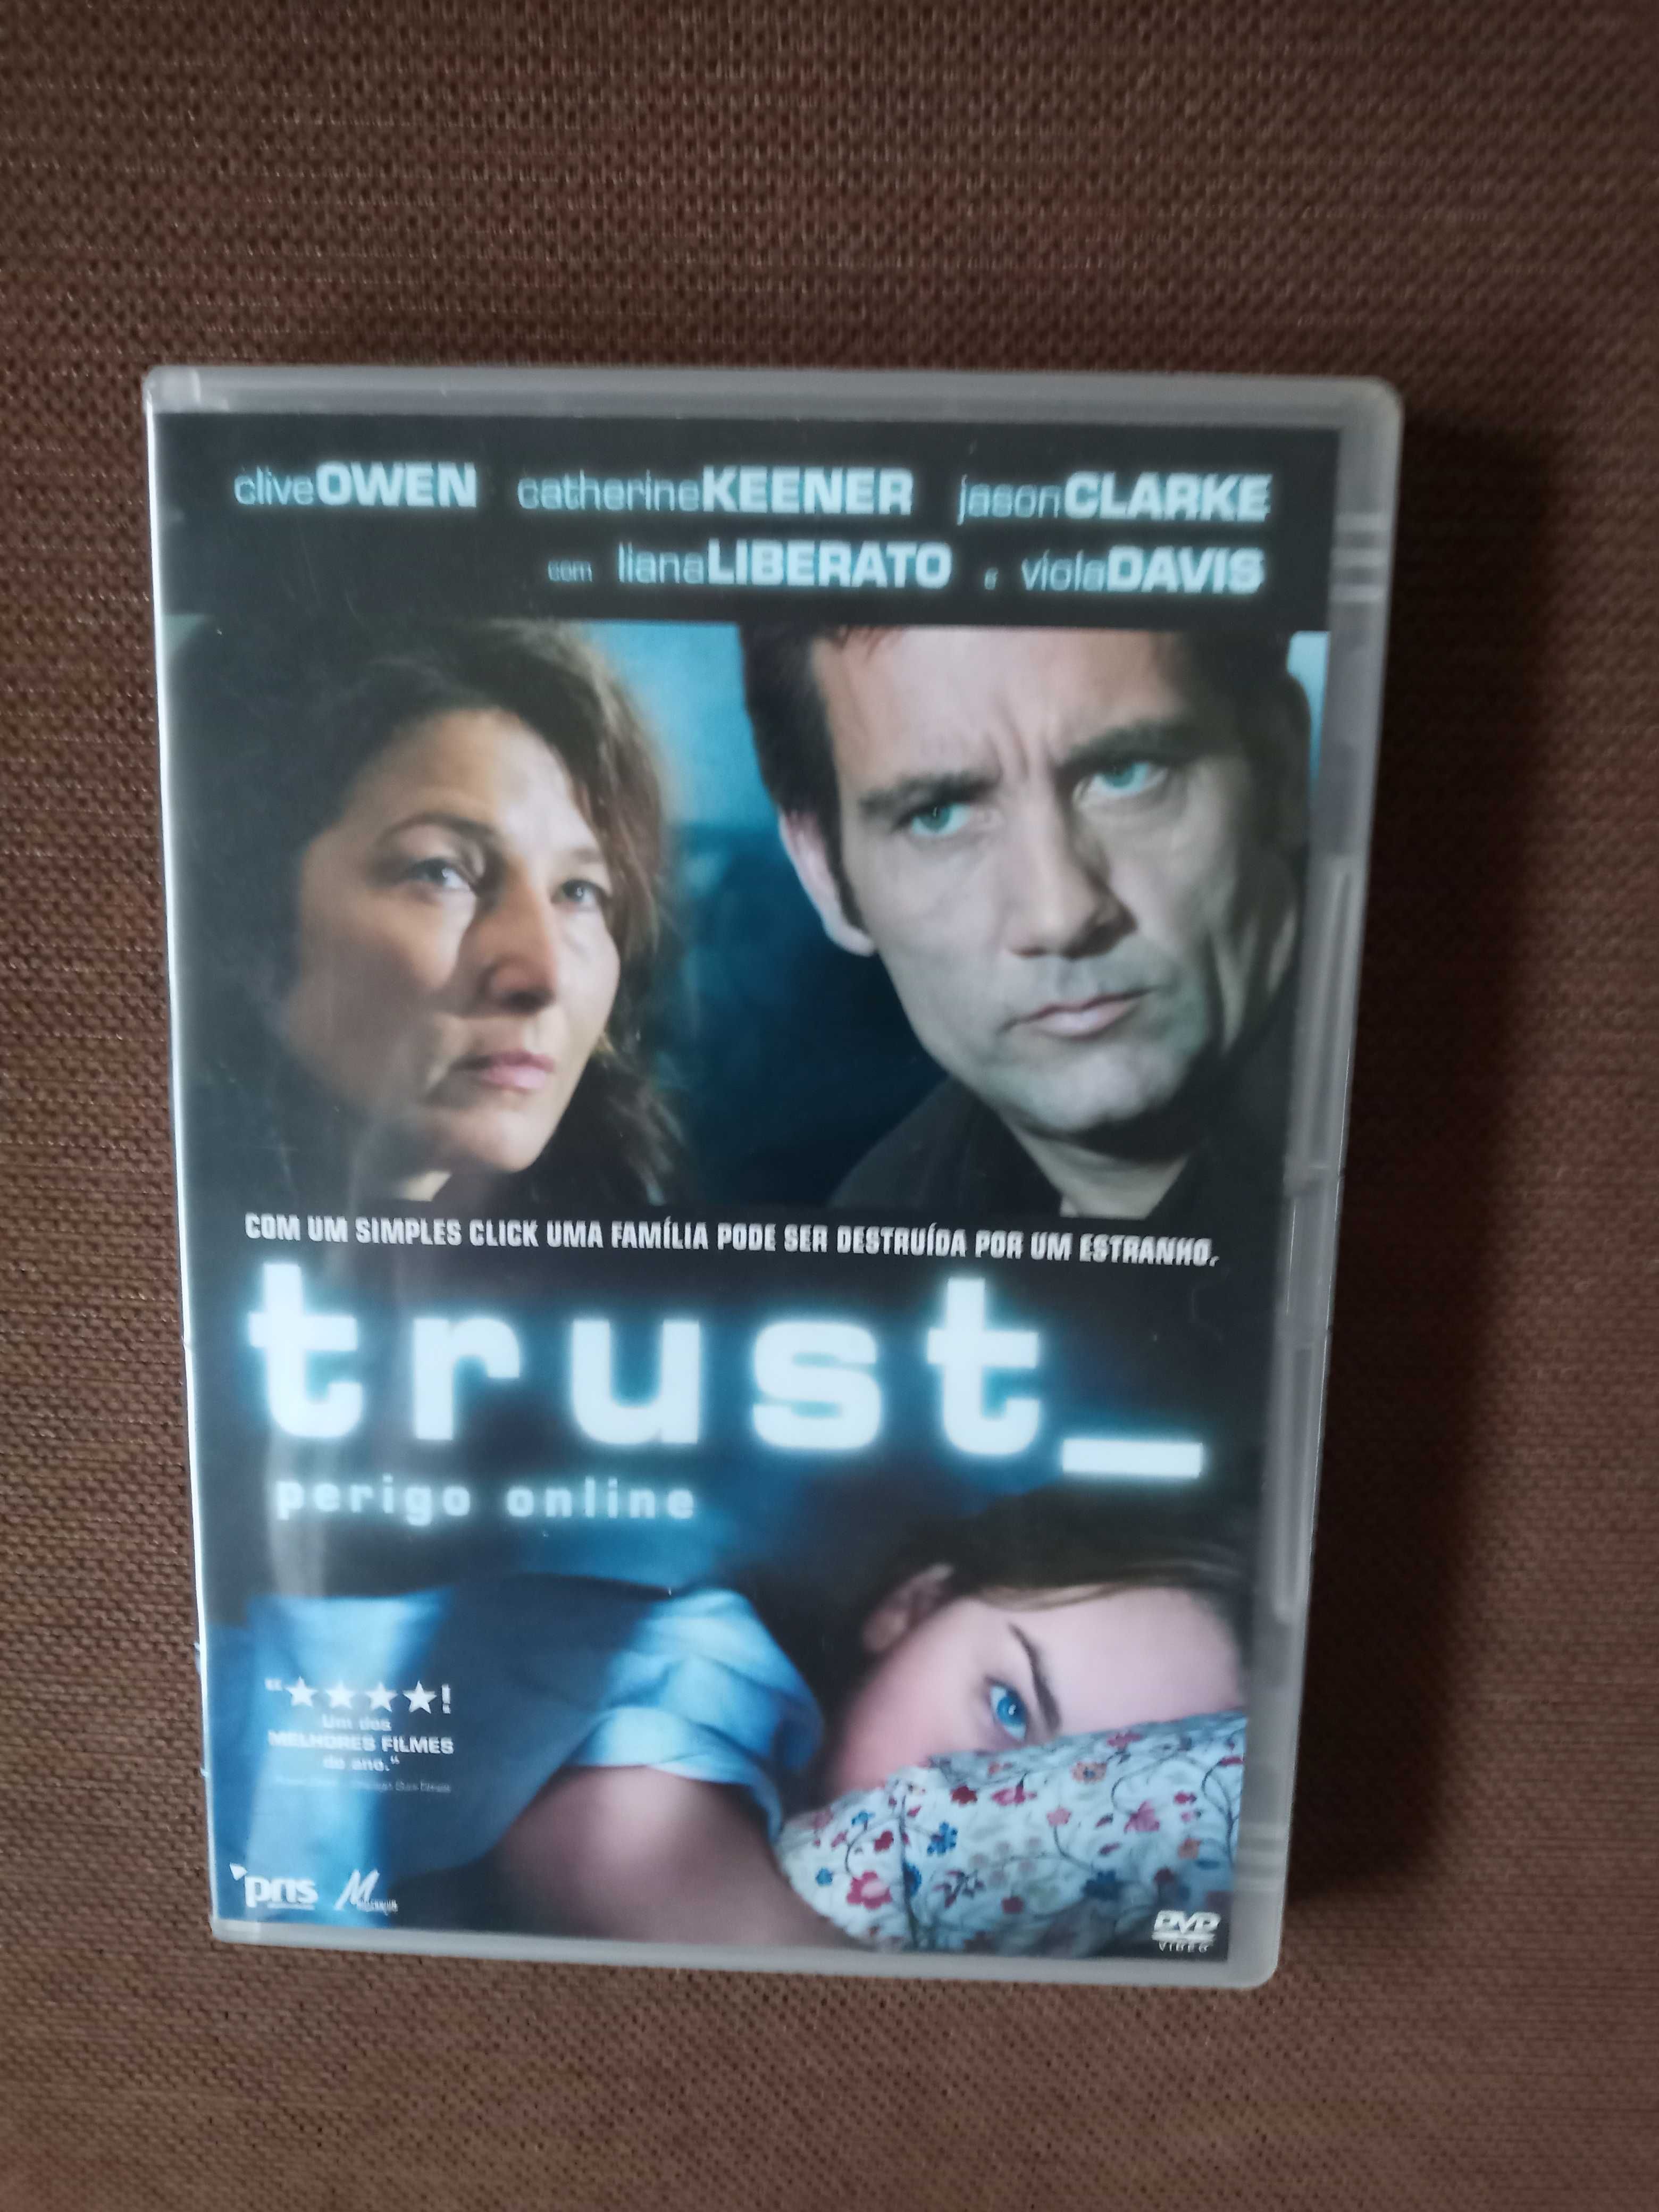 filme  dvd original - trust perigo online raro